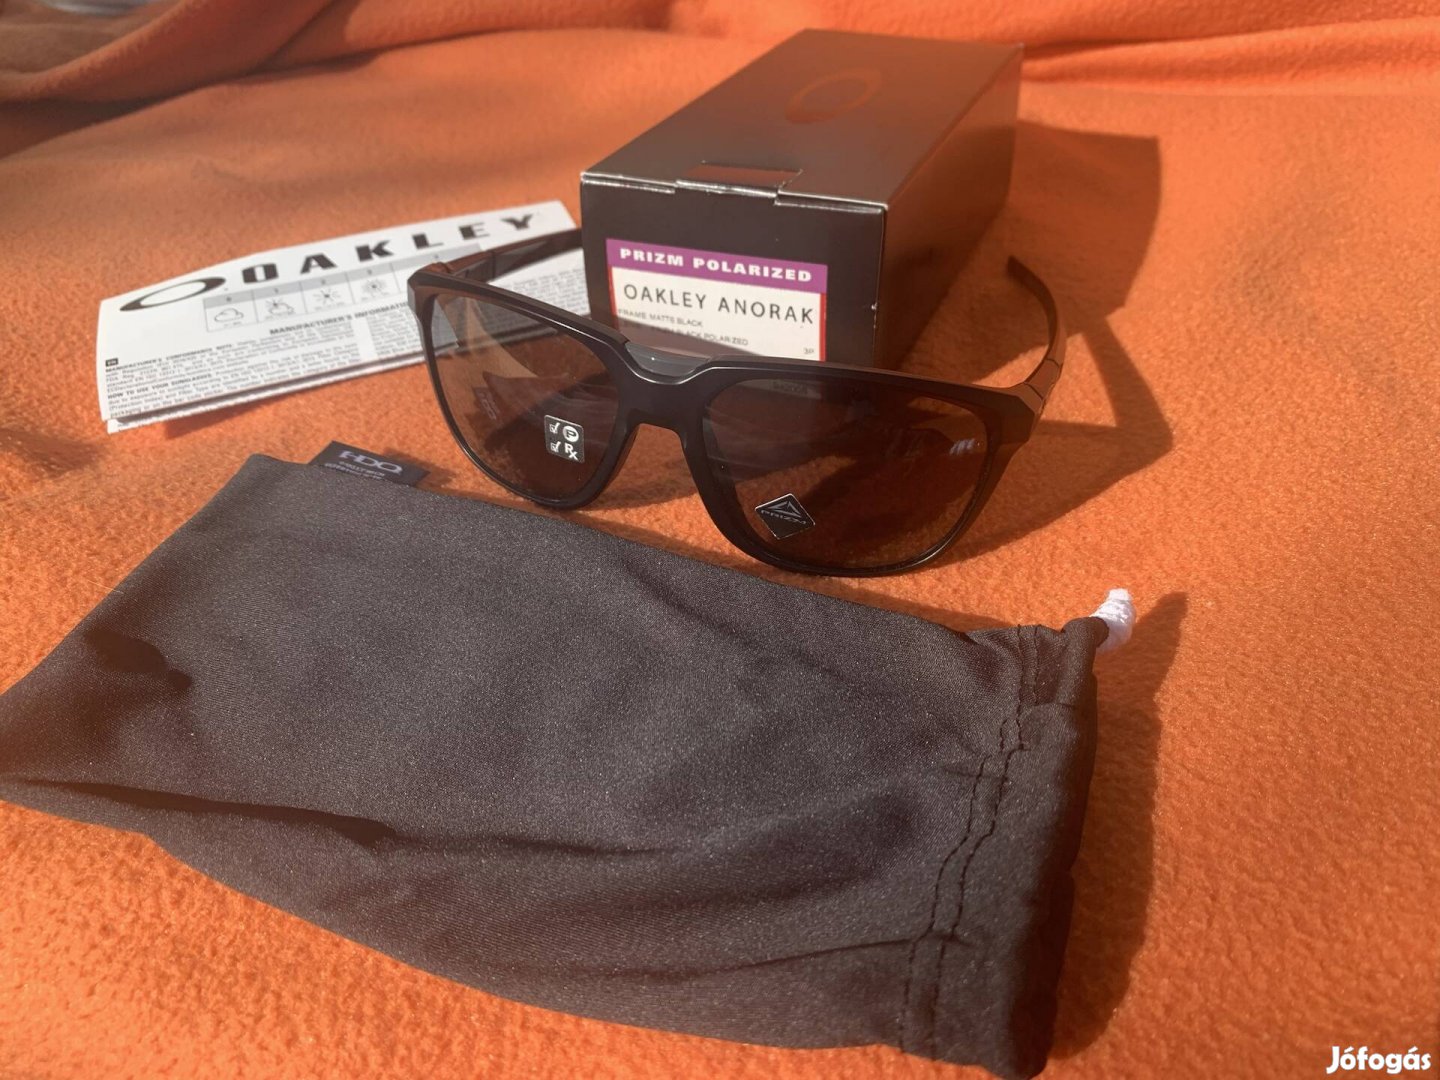 Oakley Anorak polarizált napszemüveg eladó